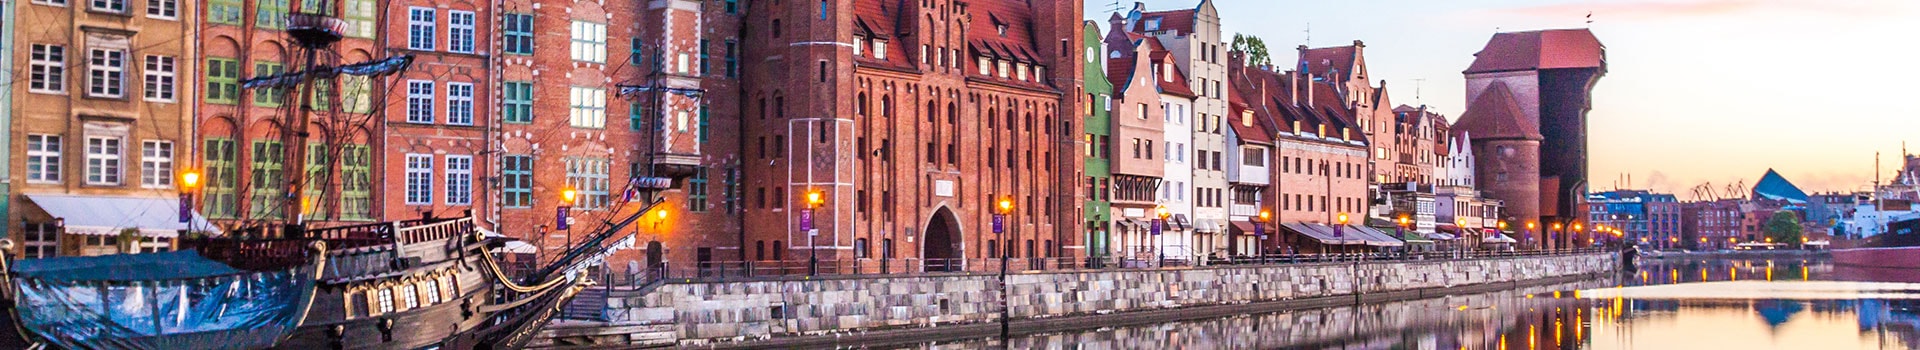 Gothenburg-landvetter - Gdansk